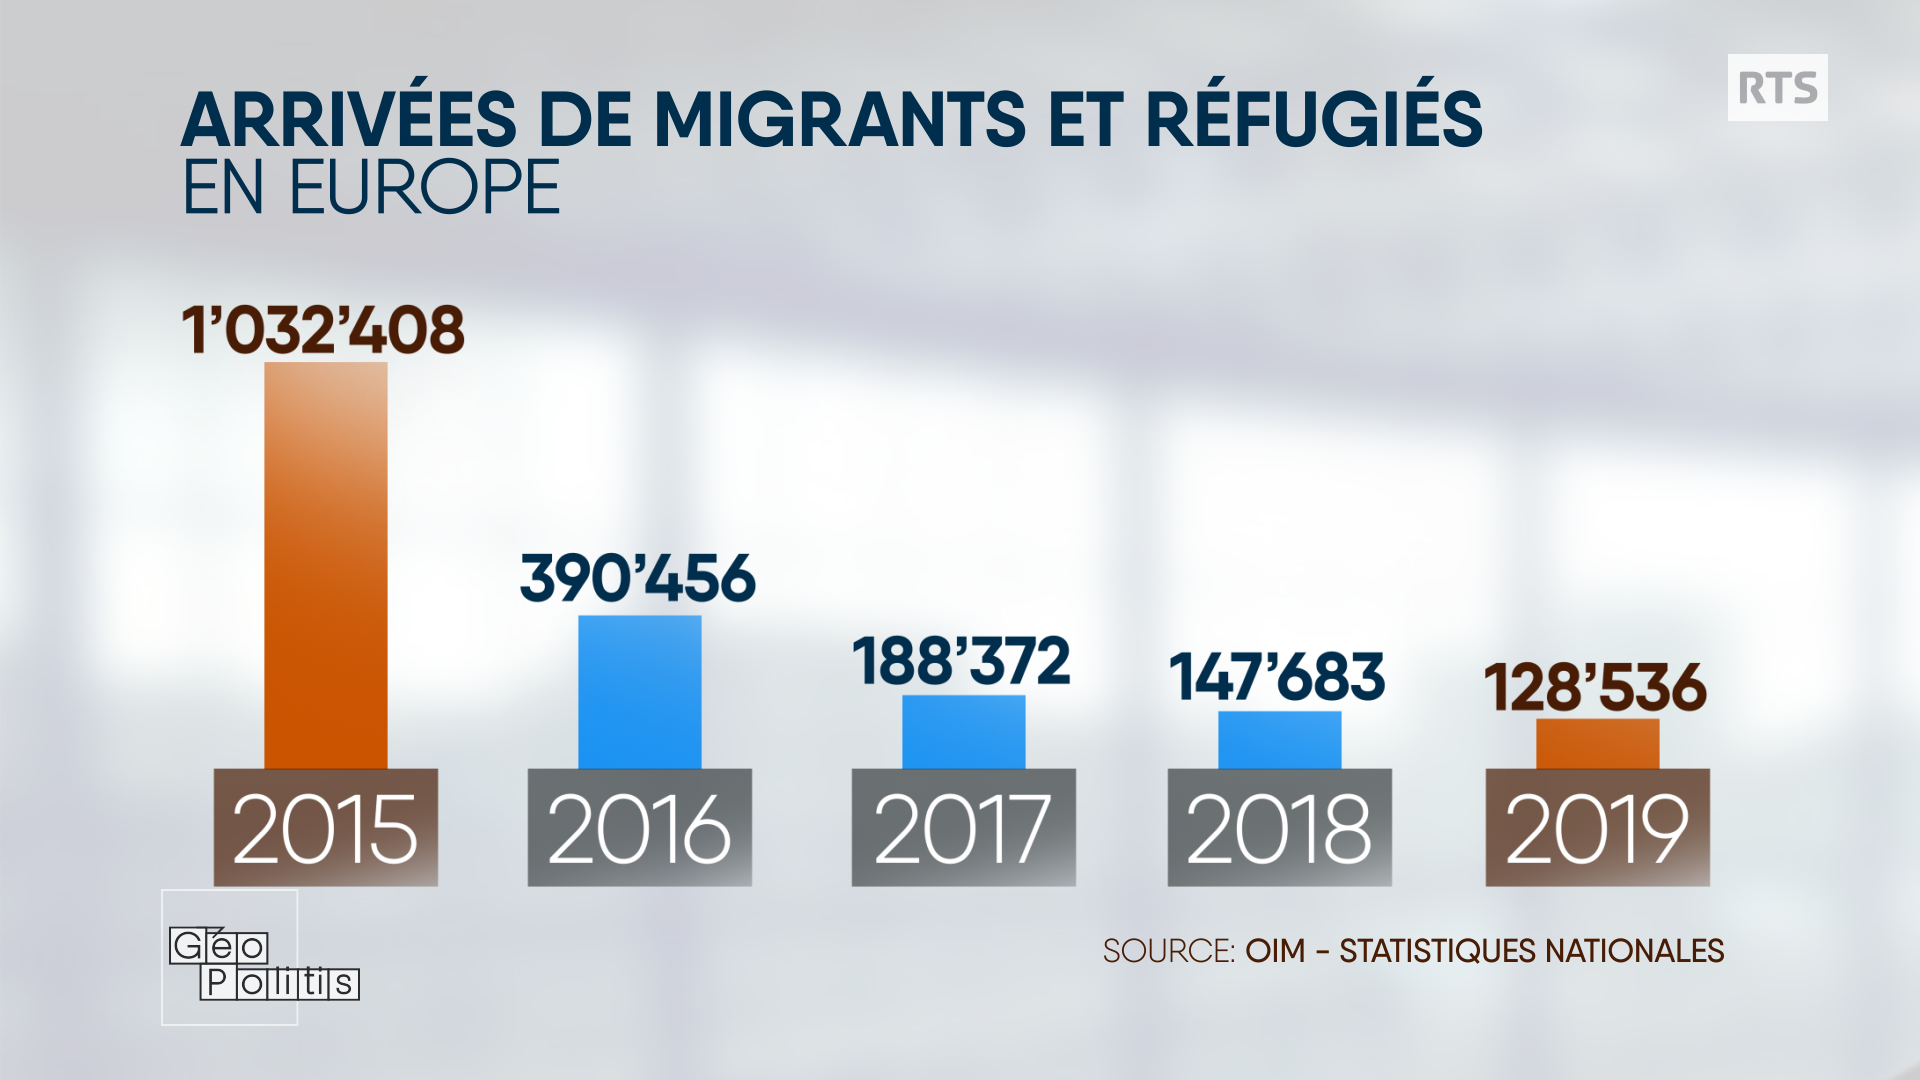 Arrivées de migrants et réfugiés en Europe de 2015 à 2019. [RTS - Géopolitis]